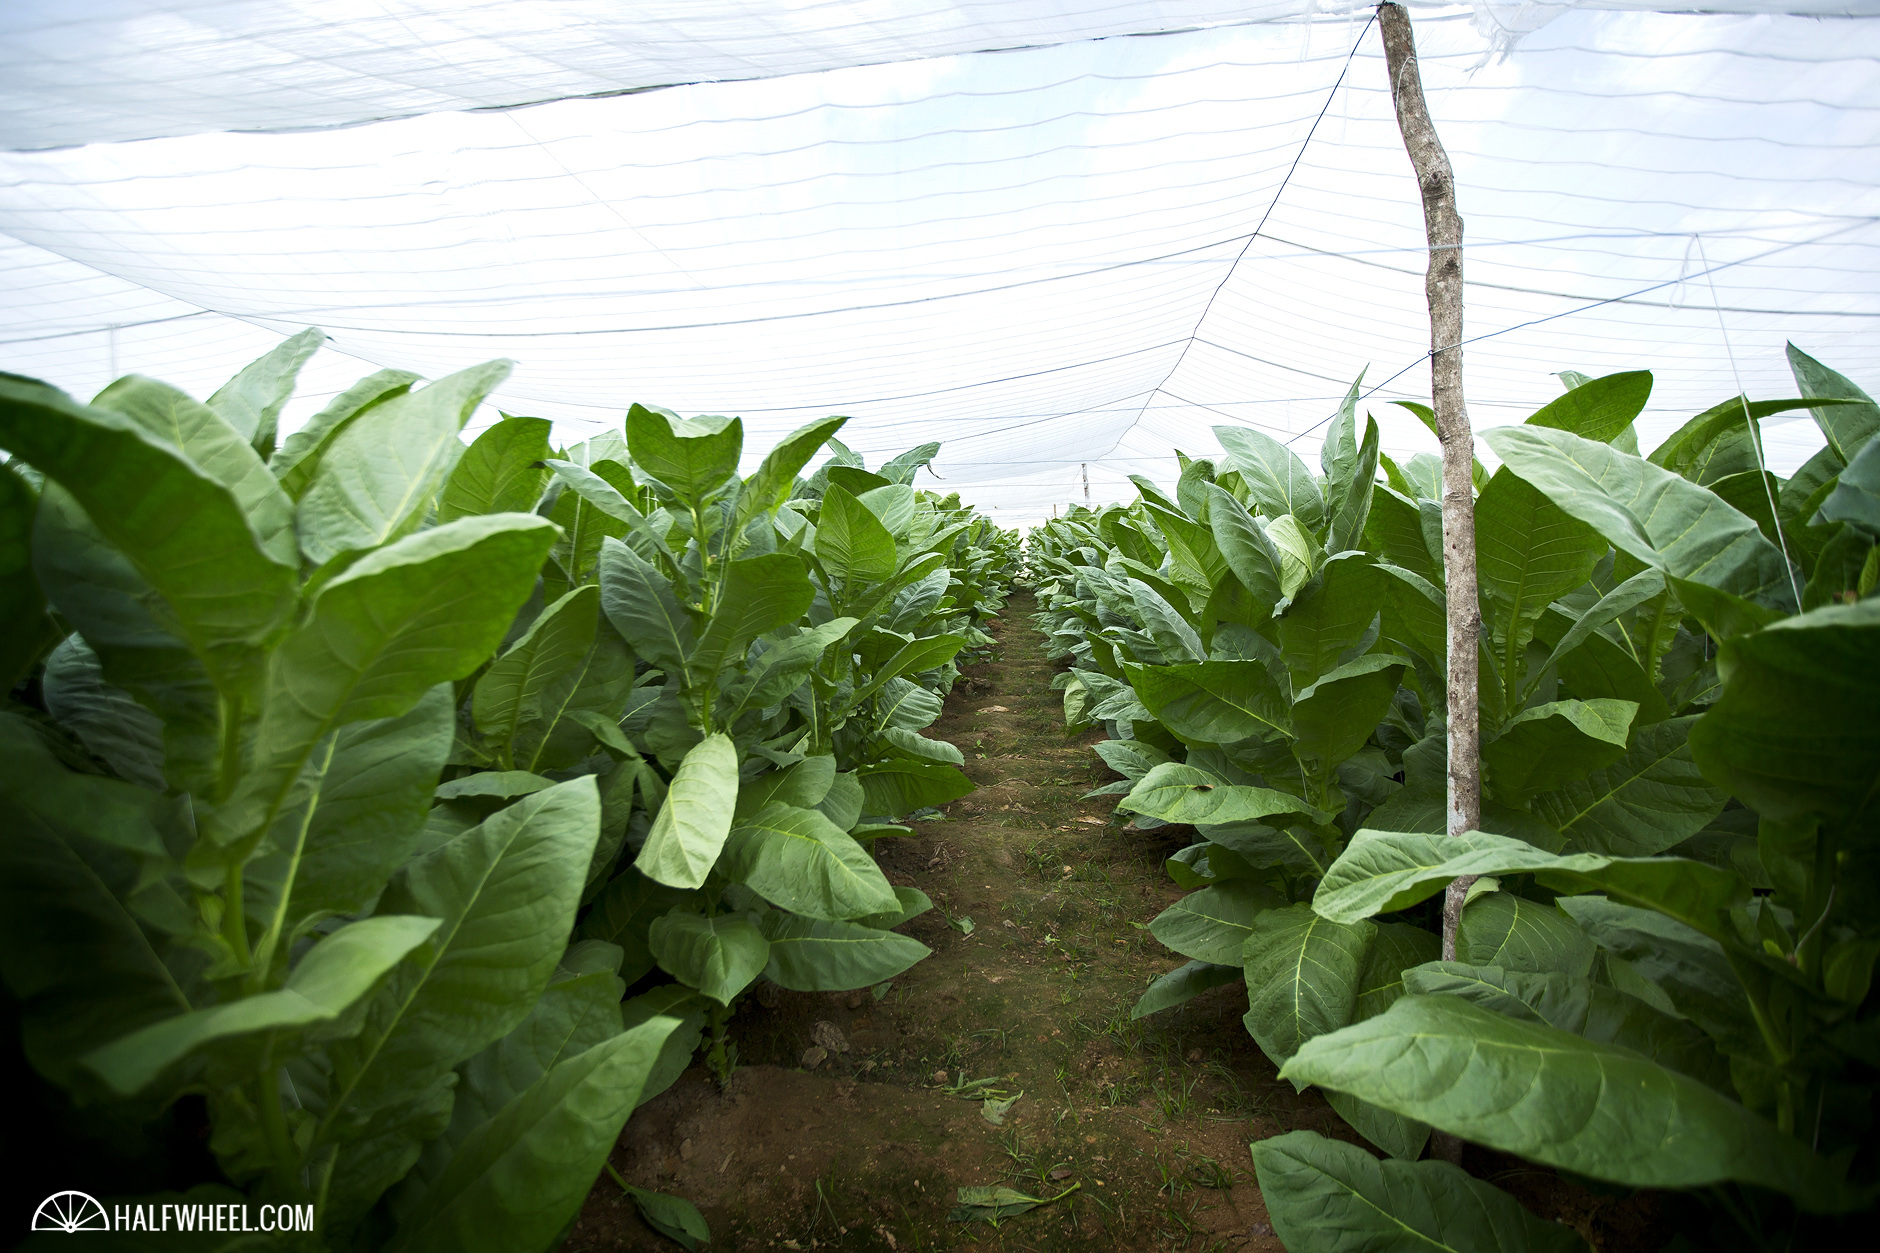 Festival del Habano XIX Day 2 Hector Luis Prieto Farm Shade Grown Tobacco Field